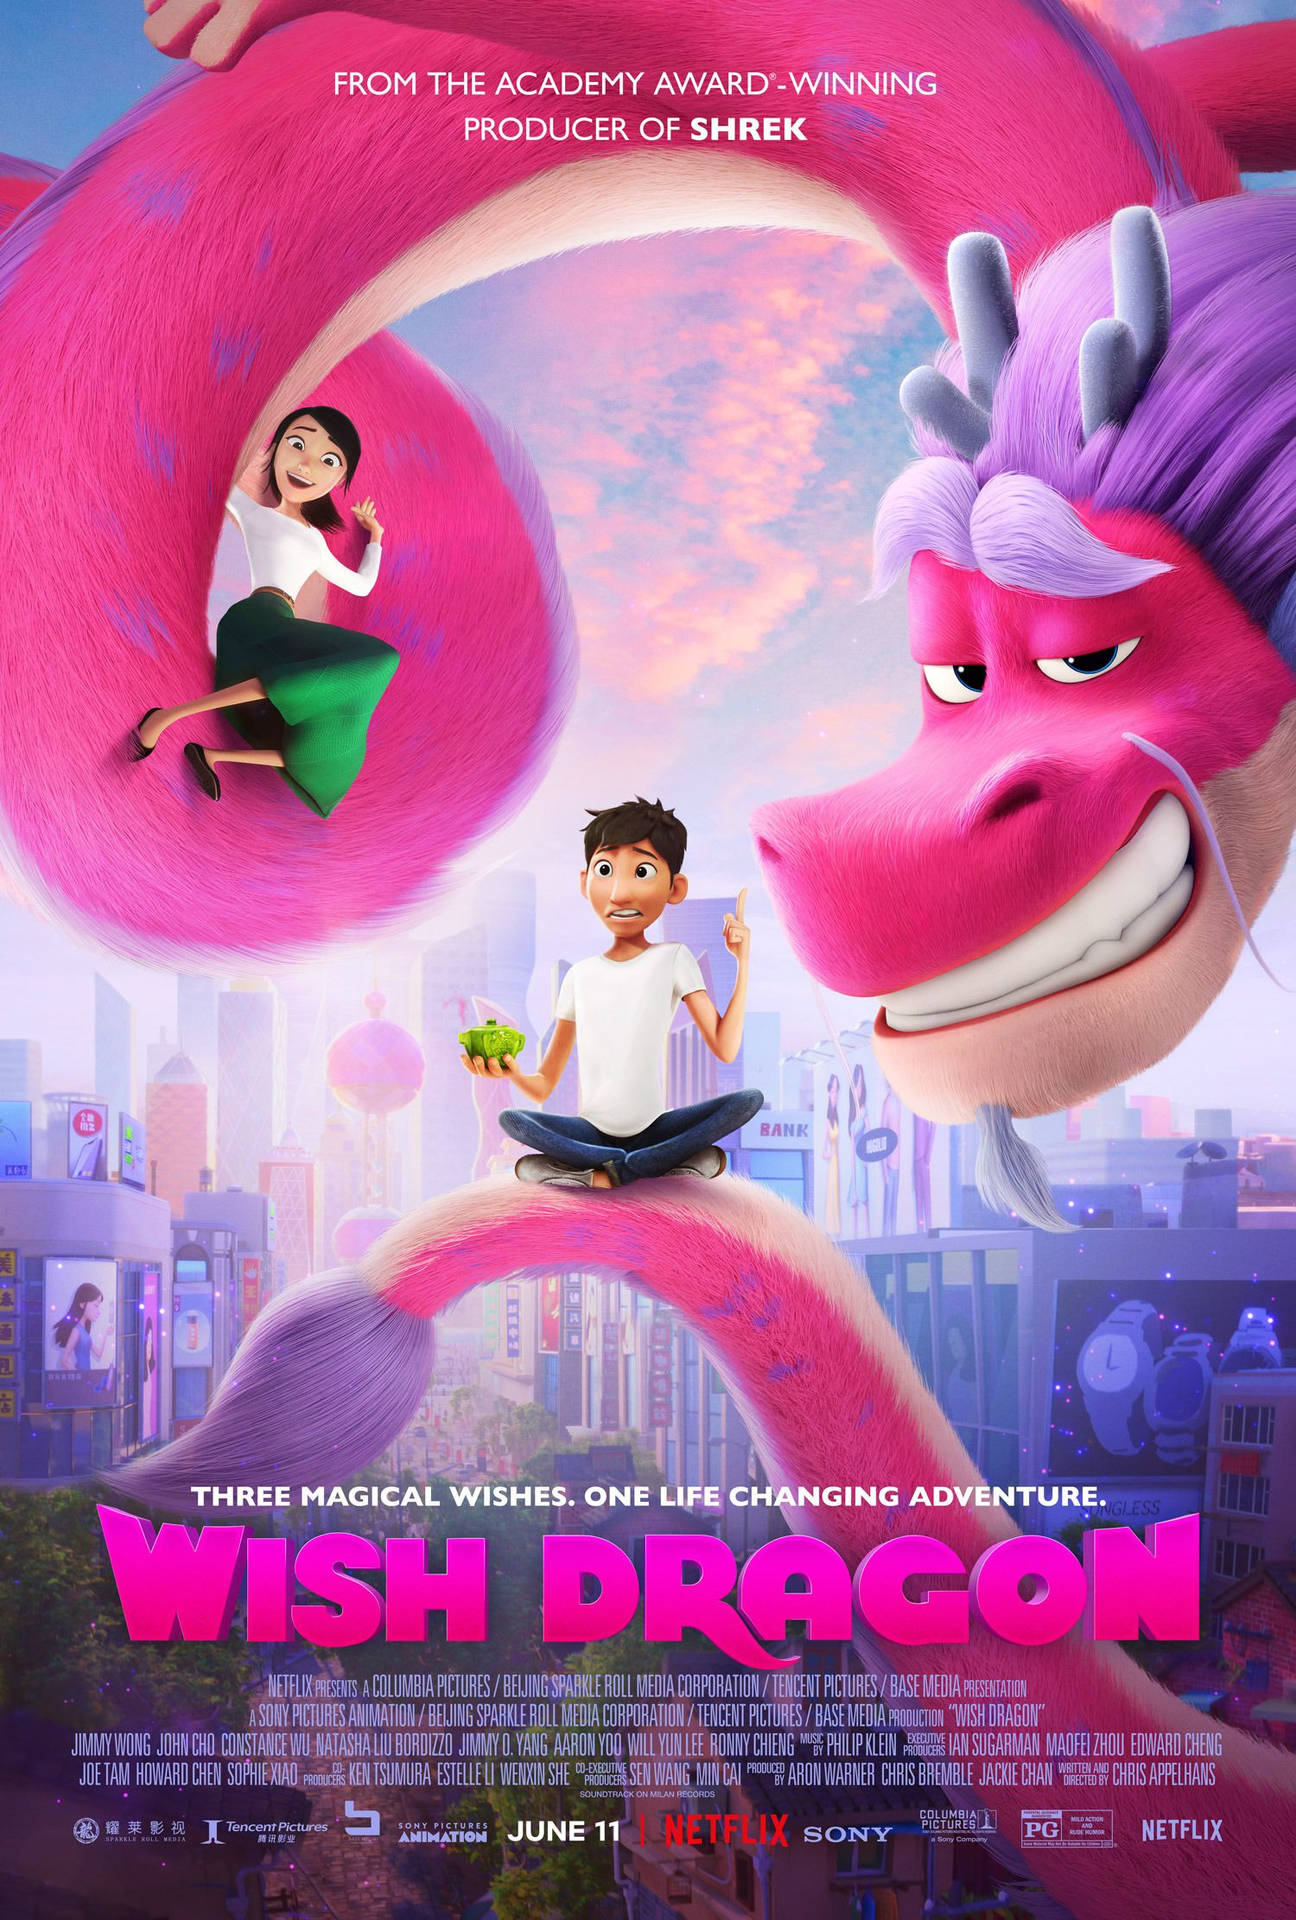 Netflix Wish Dragon Premiere Background